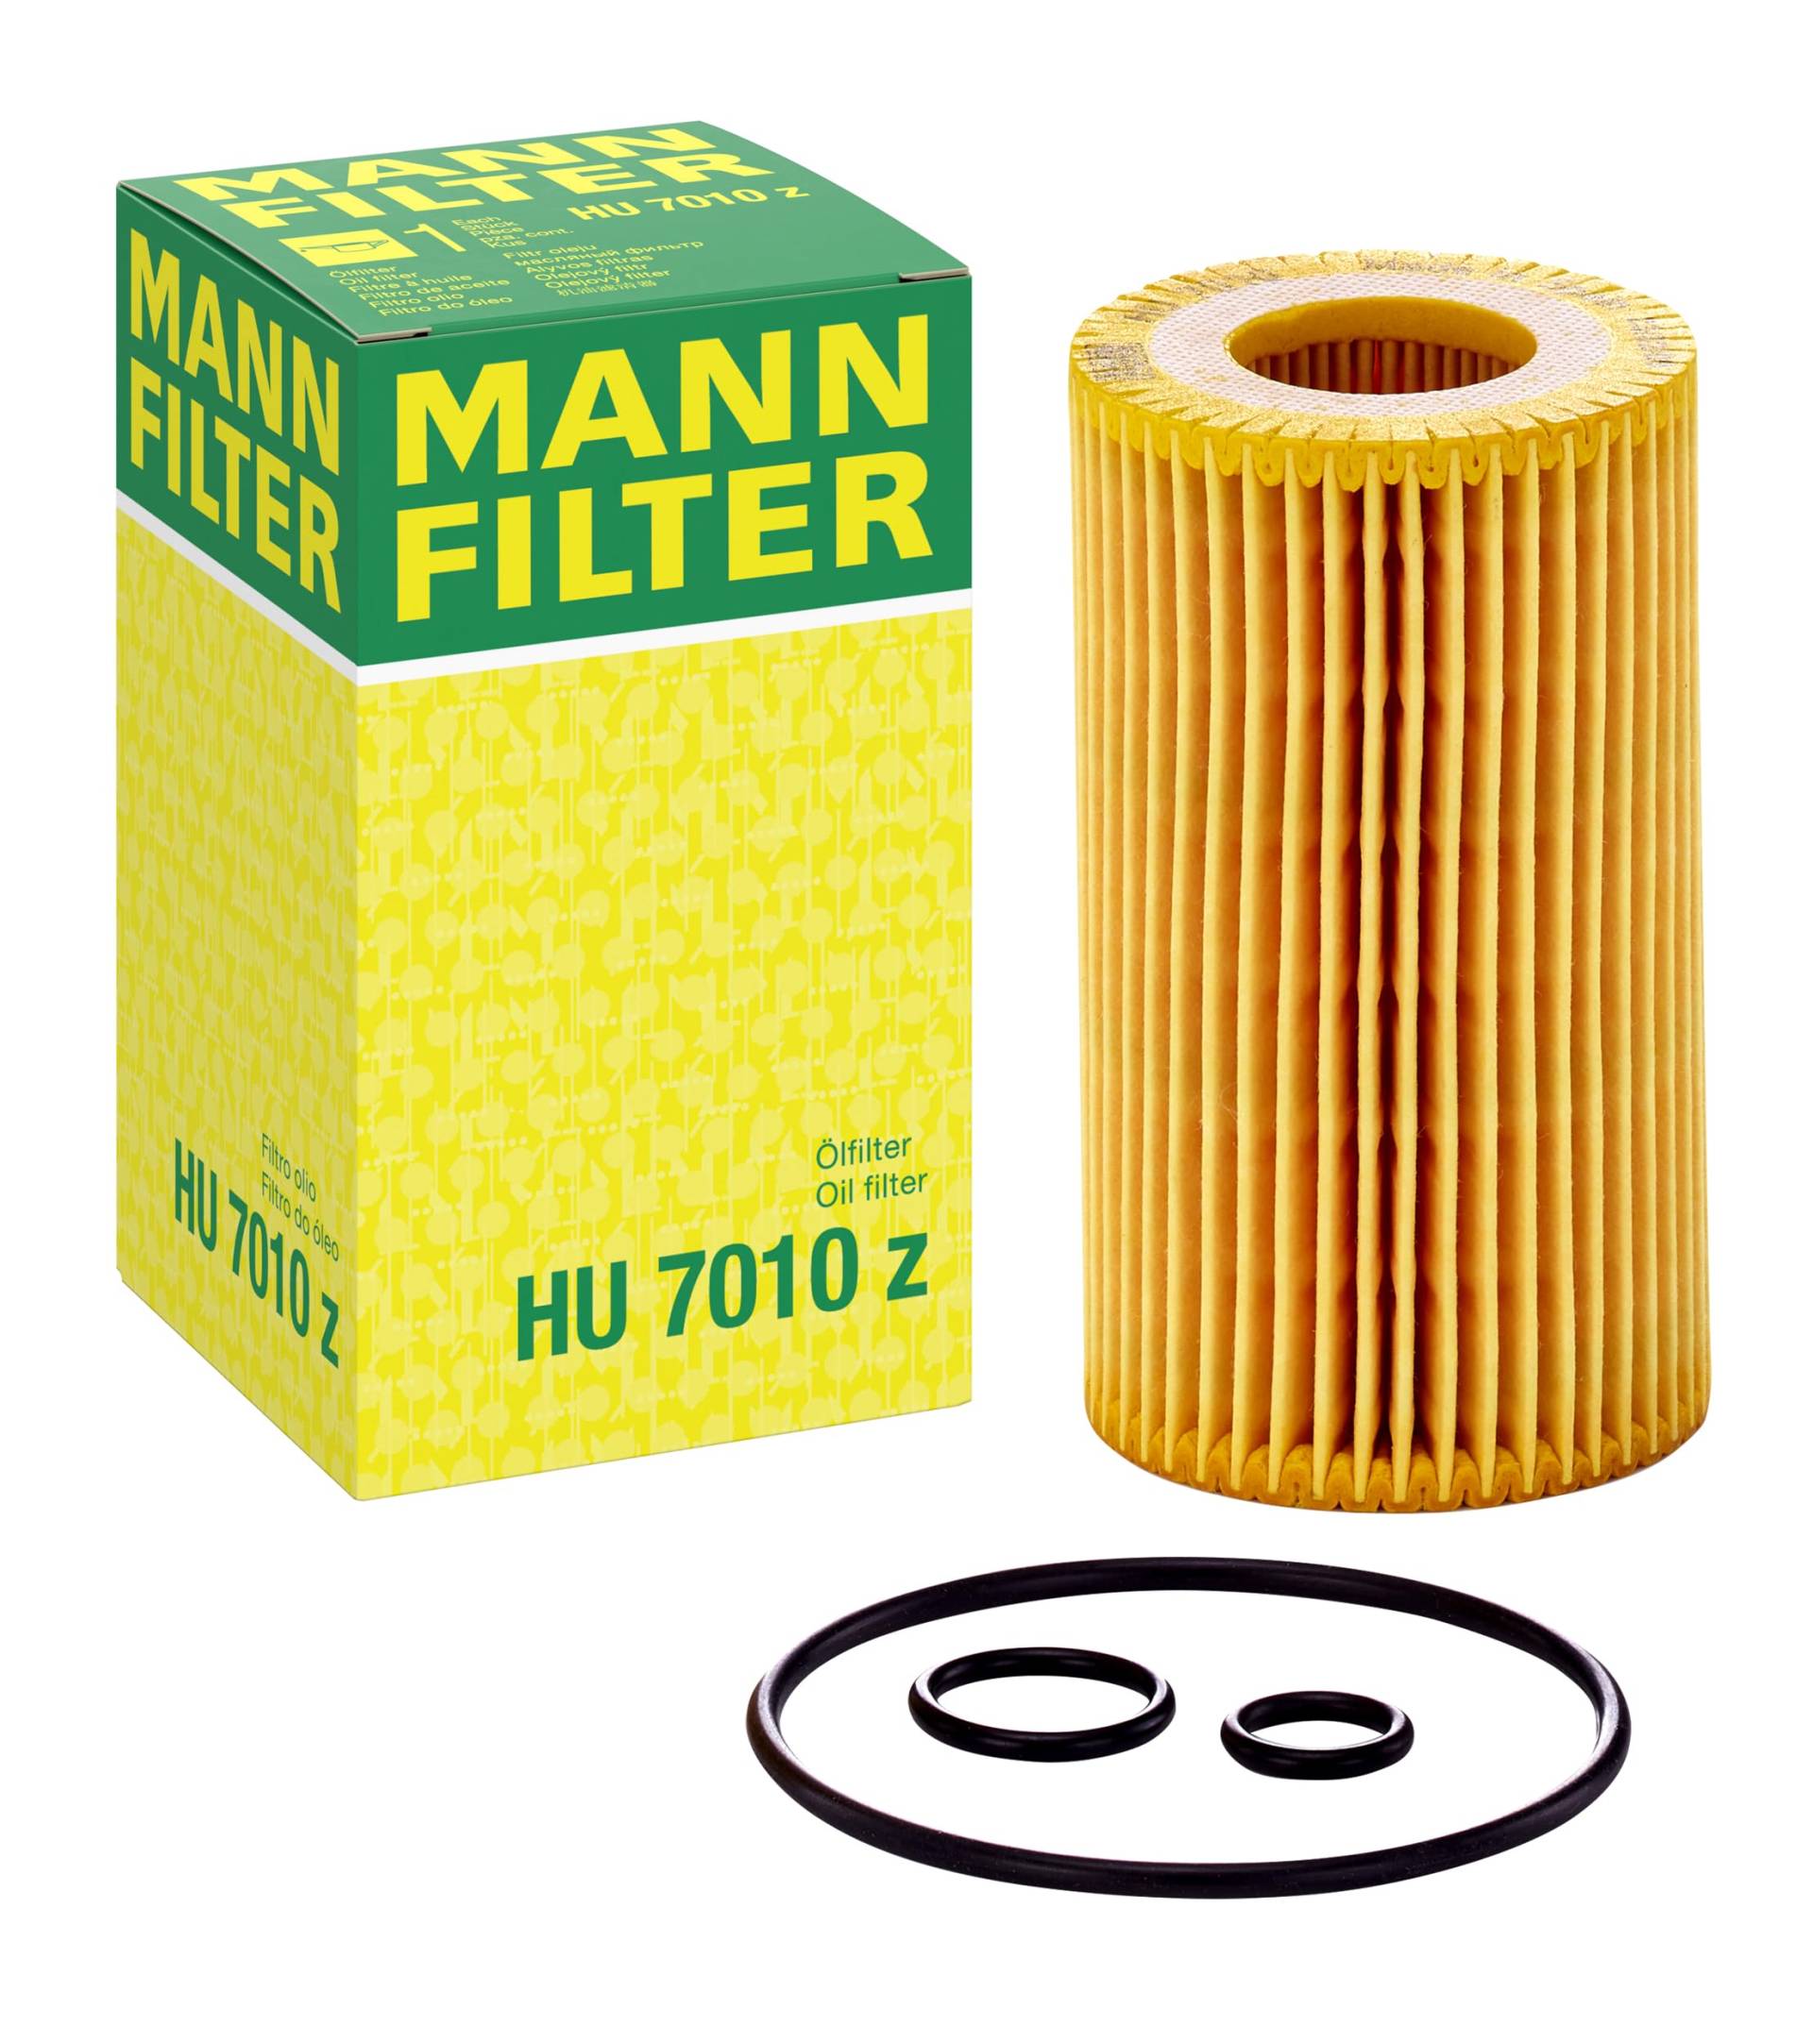 MANN-FILTER HU 7010 Z Ölfilter – Ölfilter Satz mit Dichtung/Dichtungssatz – Für PKW und Kleinbusse von MANN-FILTER